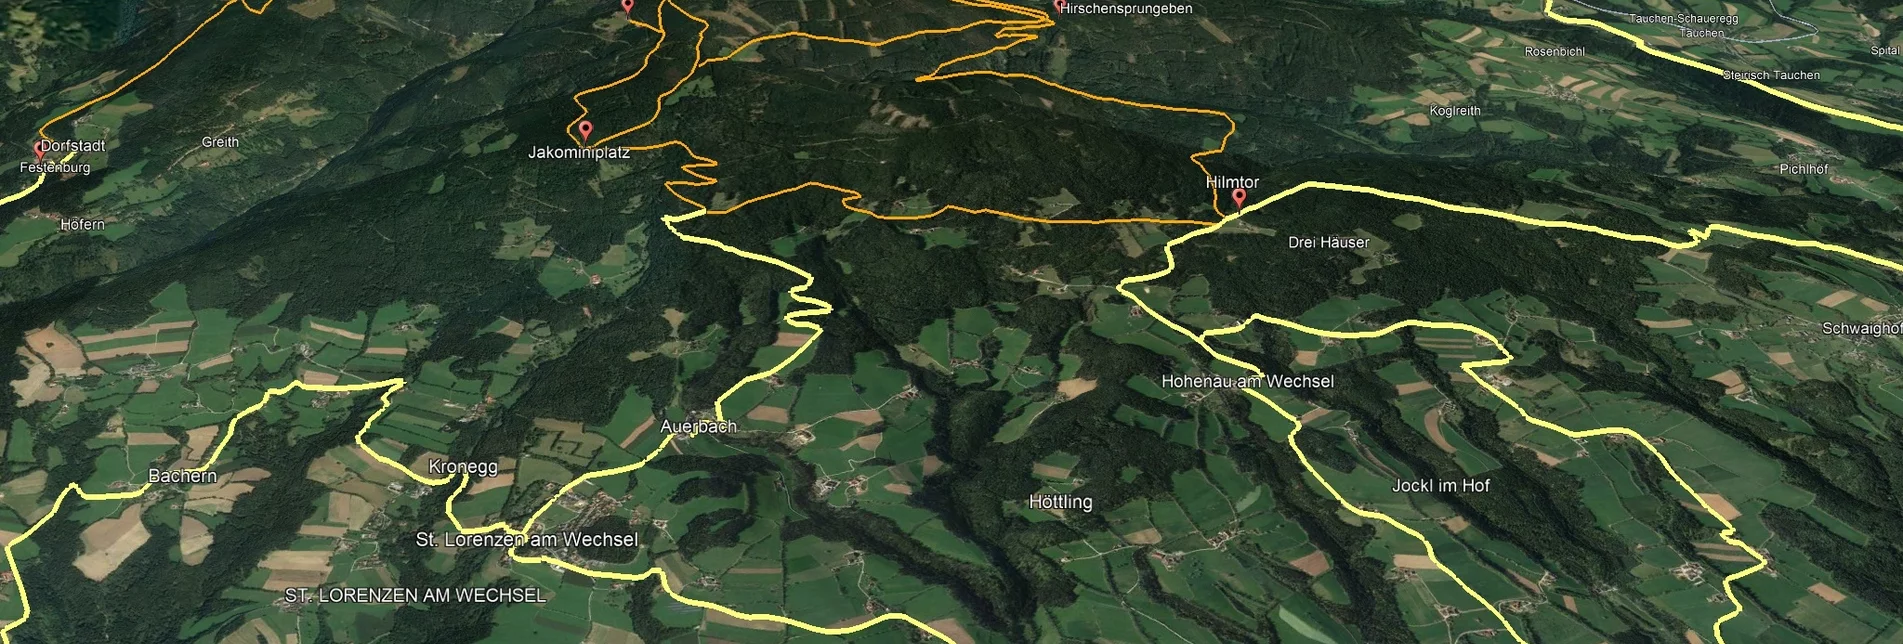 Mountainbike Steirische Wexl Trails - Windhang Route - Touren-Impression #1 | © Verein Tourismusentwicklung Steirischer Wechsel